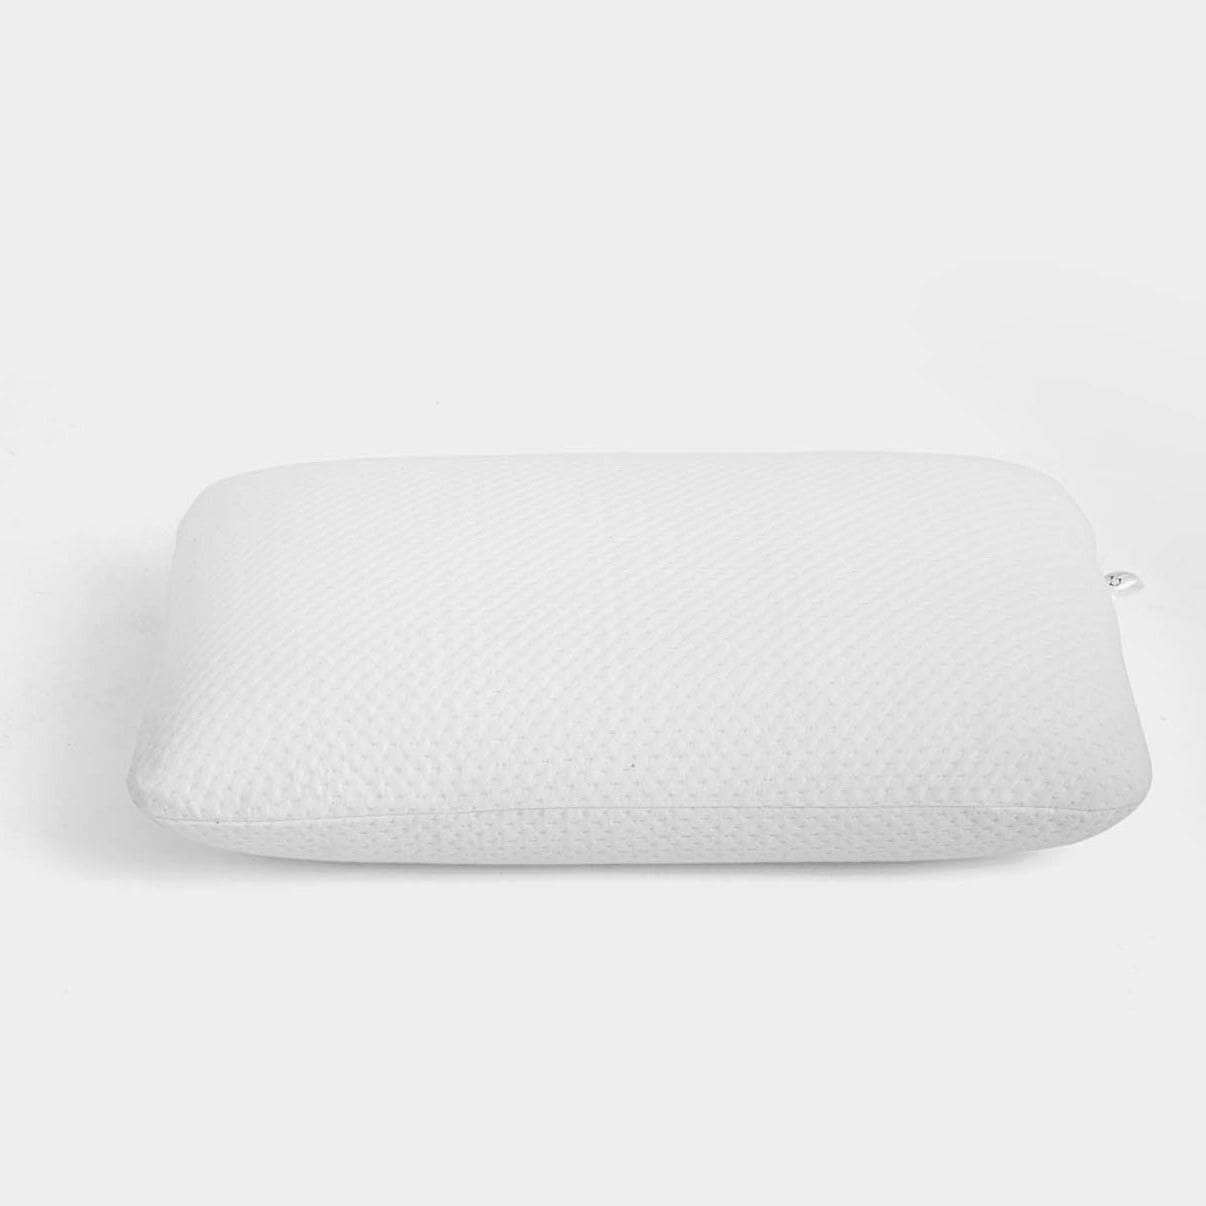 Penguin Group Pillows Standard Memory Foam Pillow